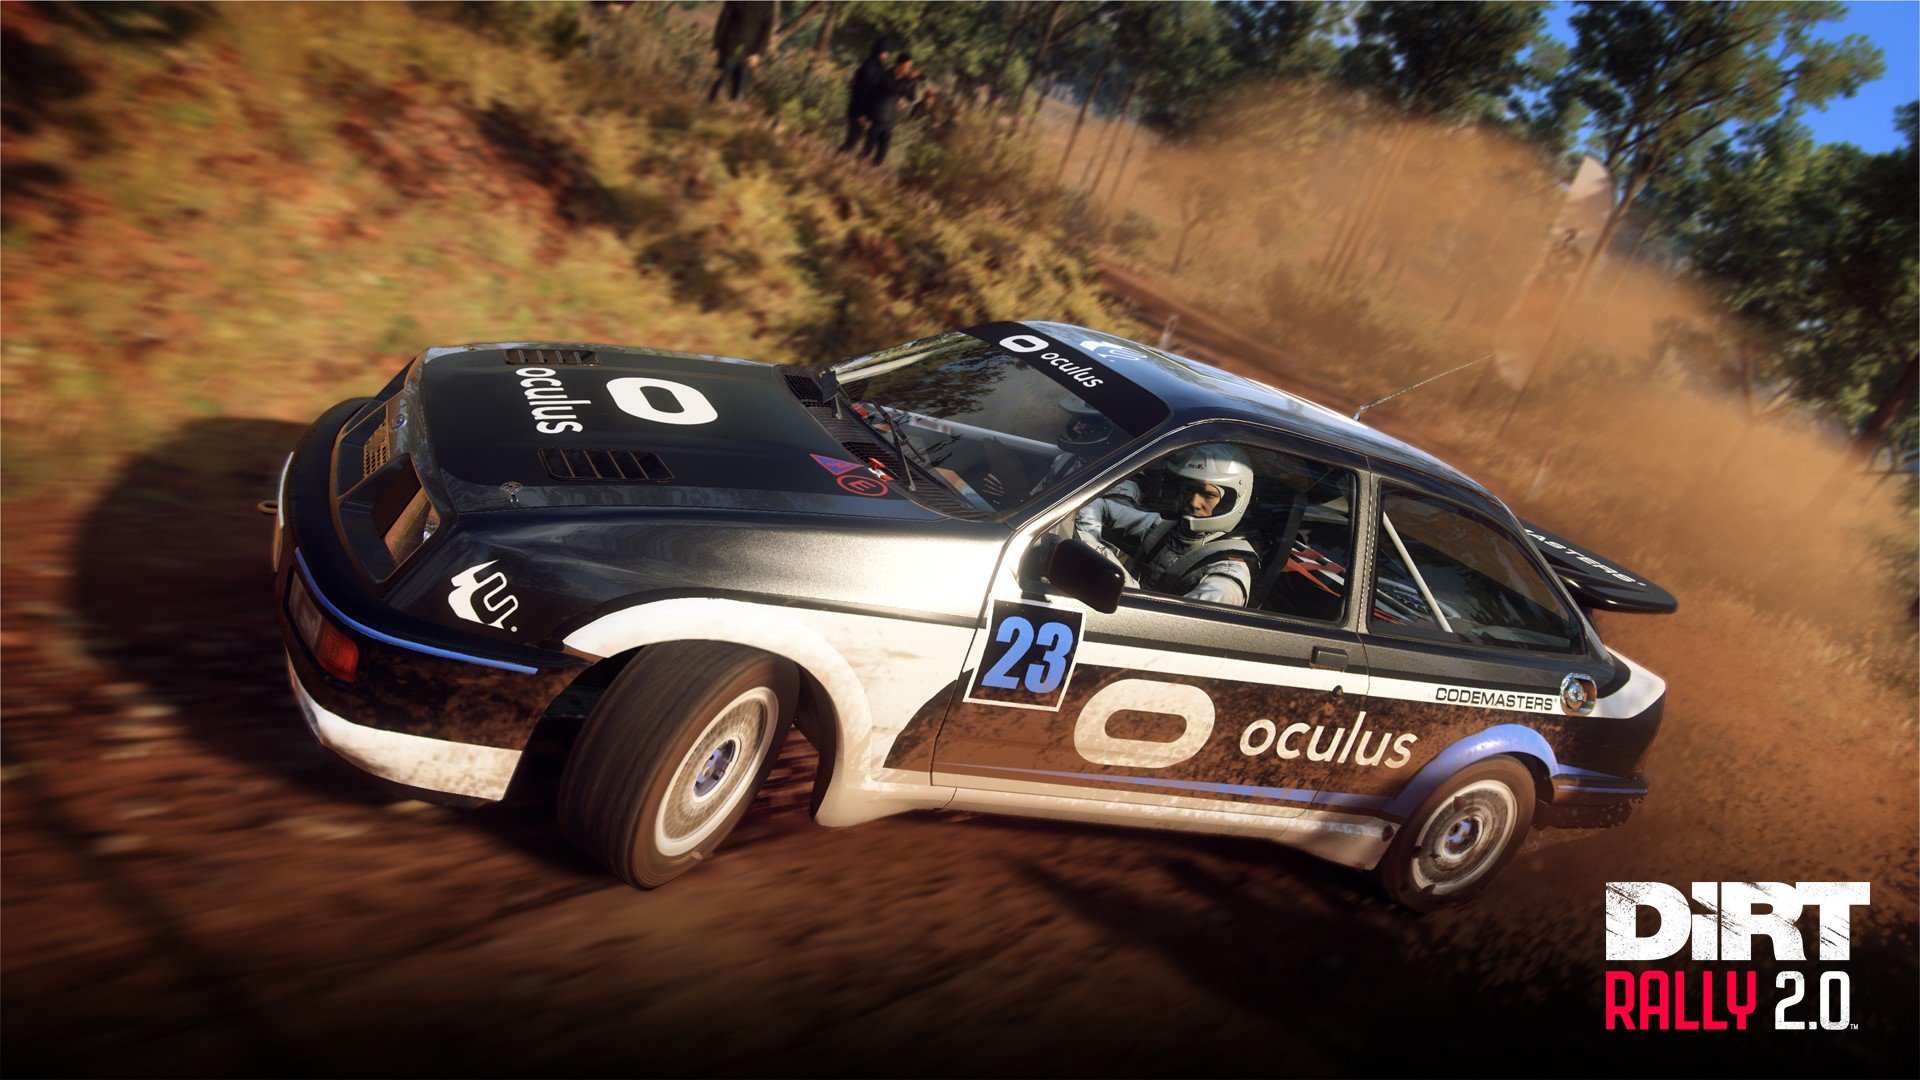 More information about "DiRT Rally 2.0 aggiornato con il supporto ad Oculus VR !"